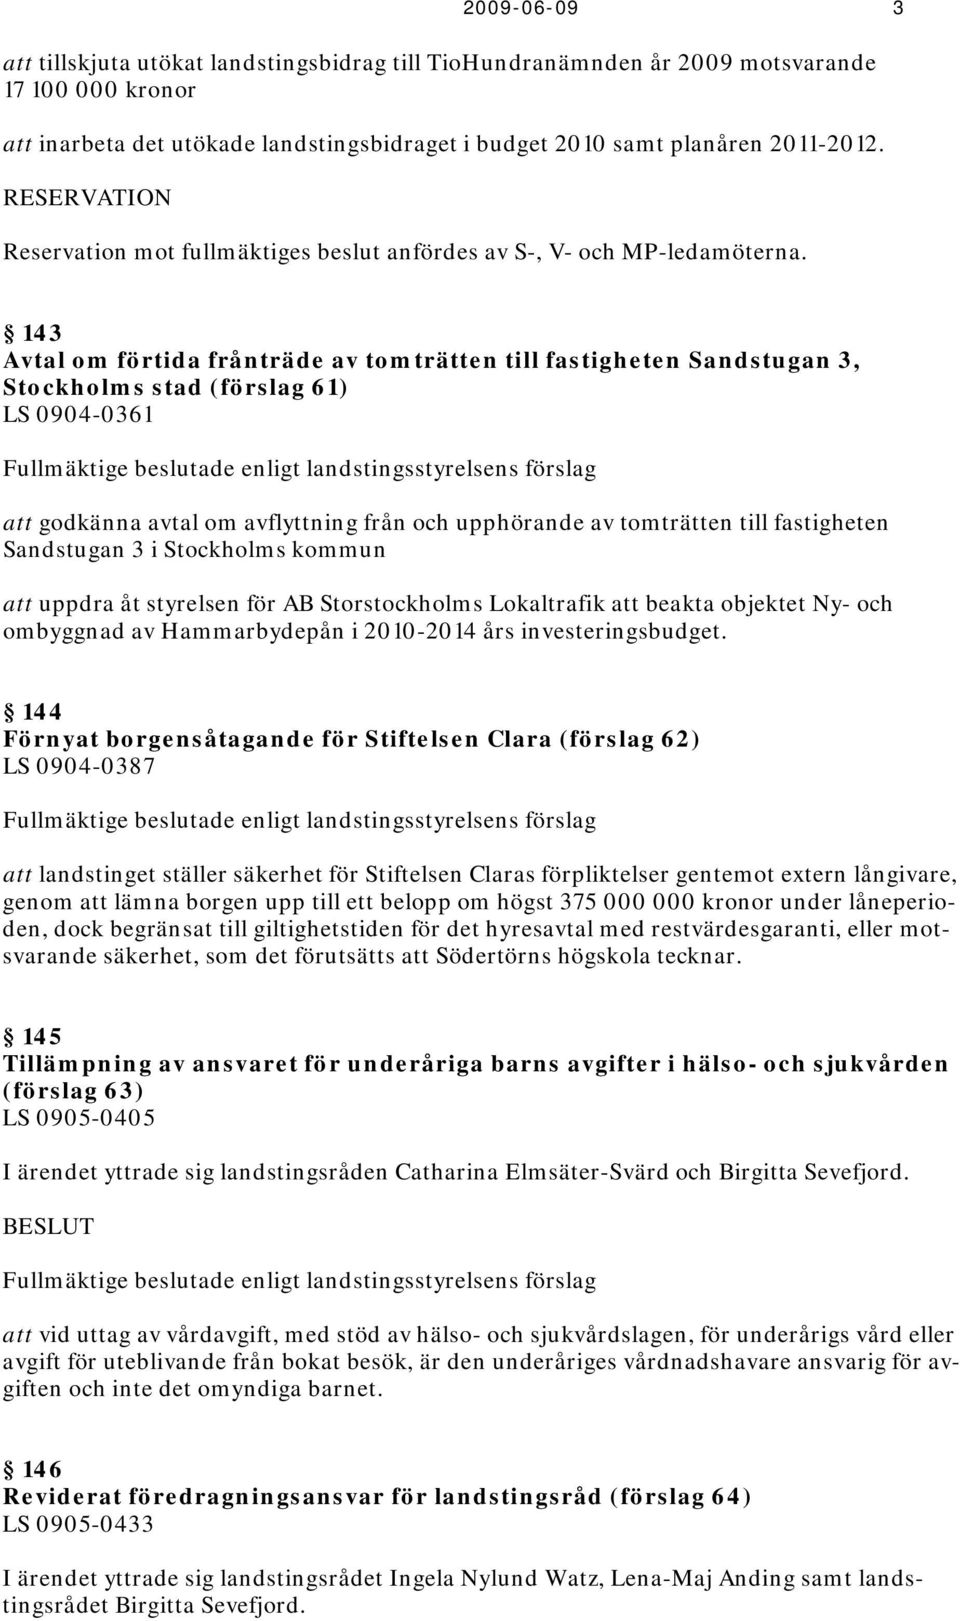 143 Avtal om förtida frånträde av tomträtten till fastigheten Sandstugan 3, Stockholms stad (förslag 61) LS 0904-0361 att godkänna avtal om avflyttning från och upphörande av tomträtten till